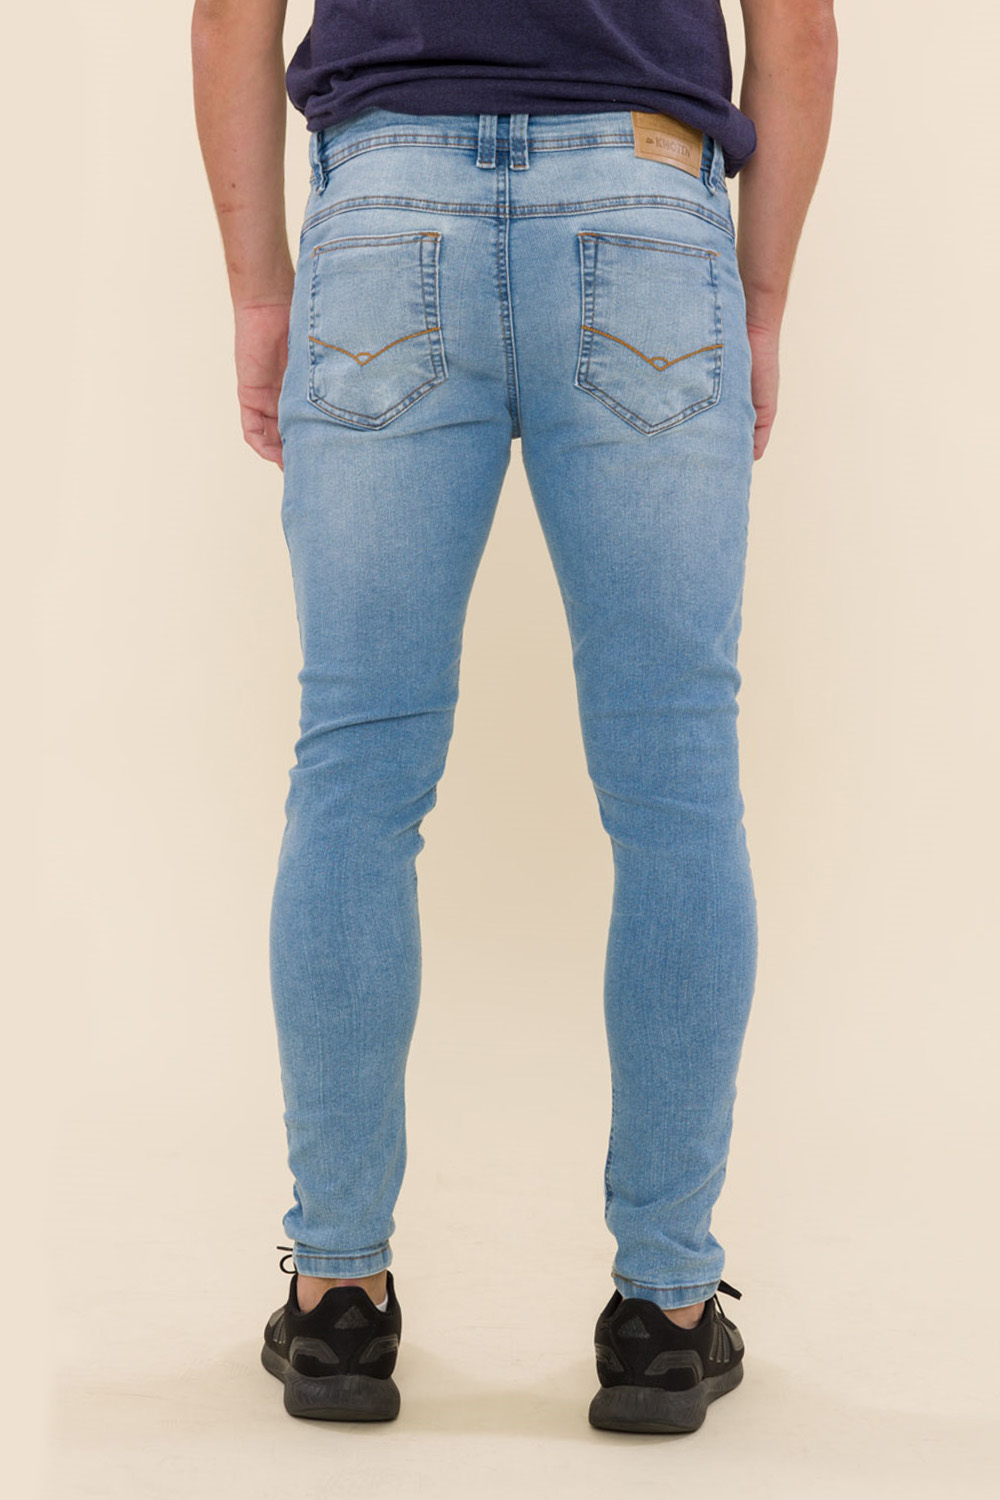 Calça Jeans Skinny Alex - Jeans Claro